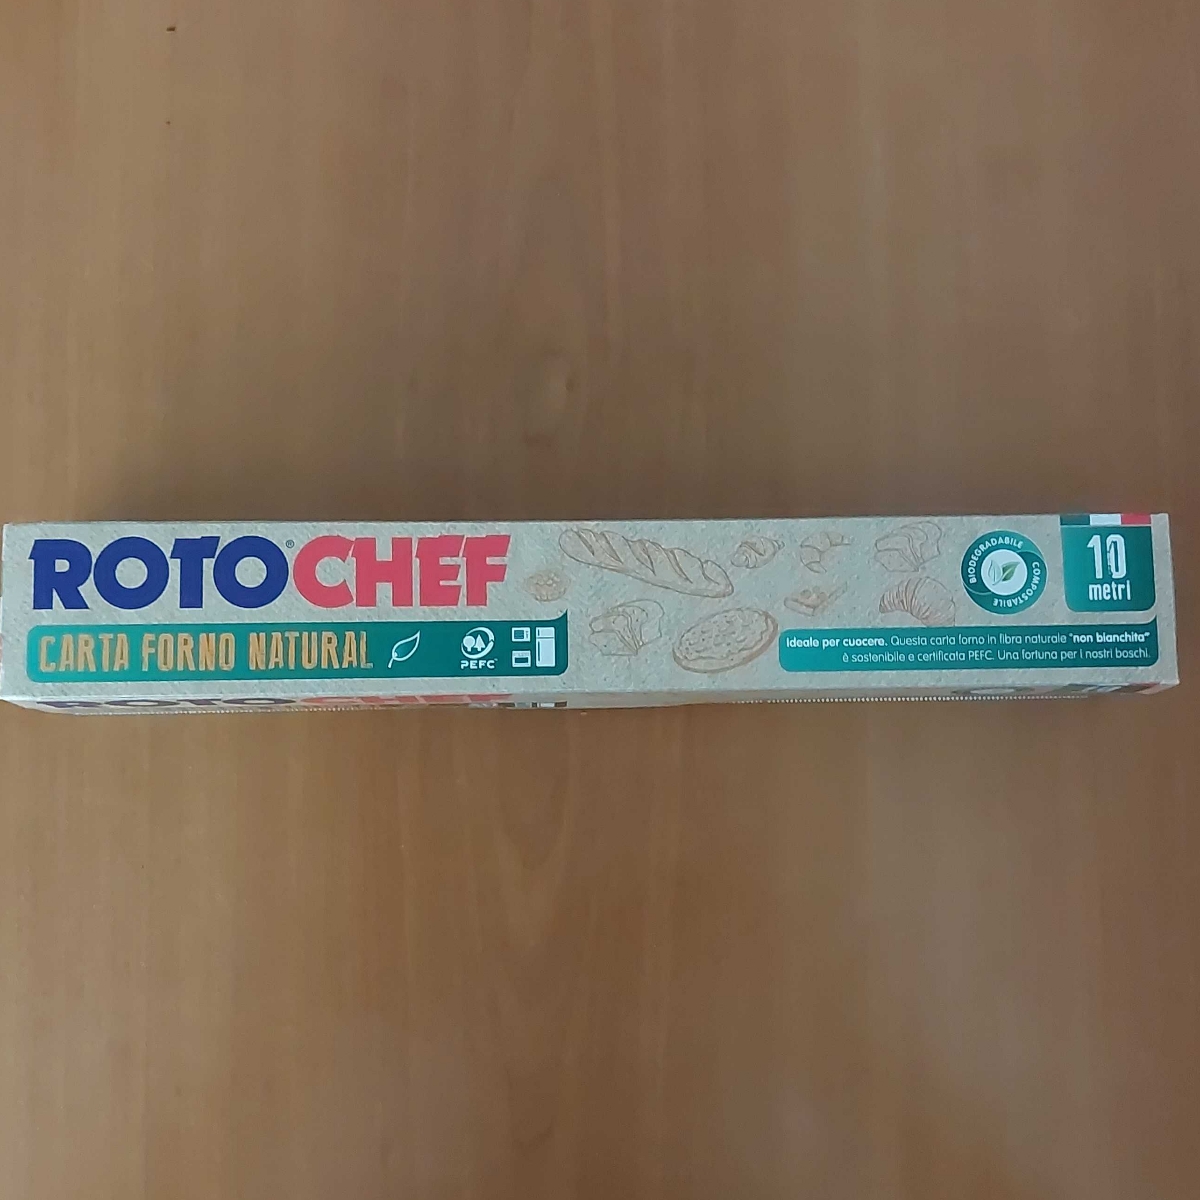 Roto Chef Carta forno natural Reviews